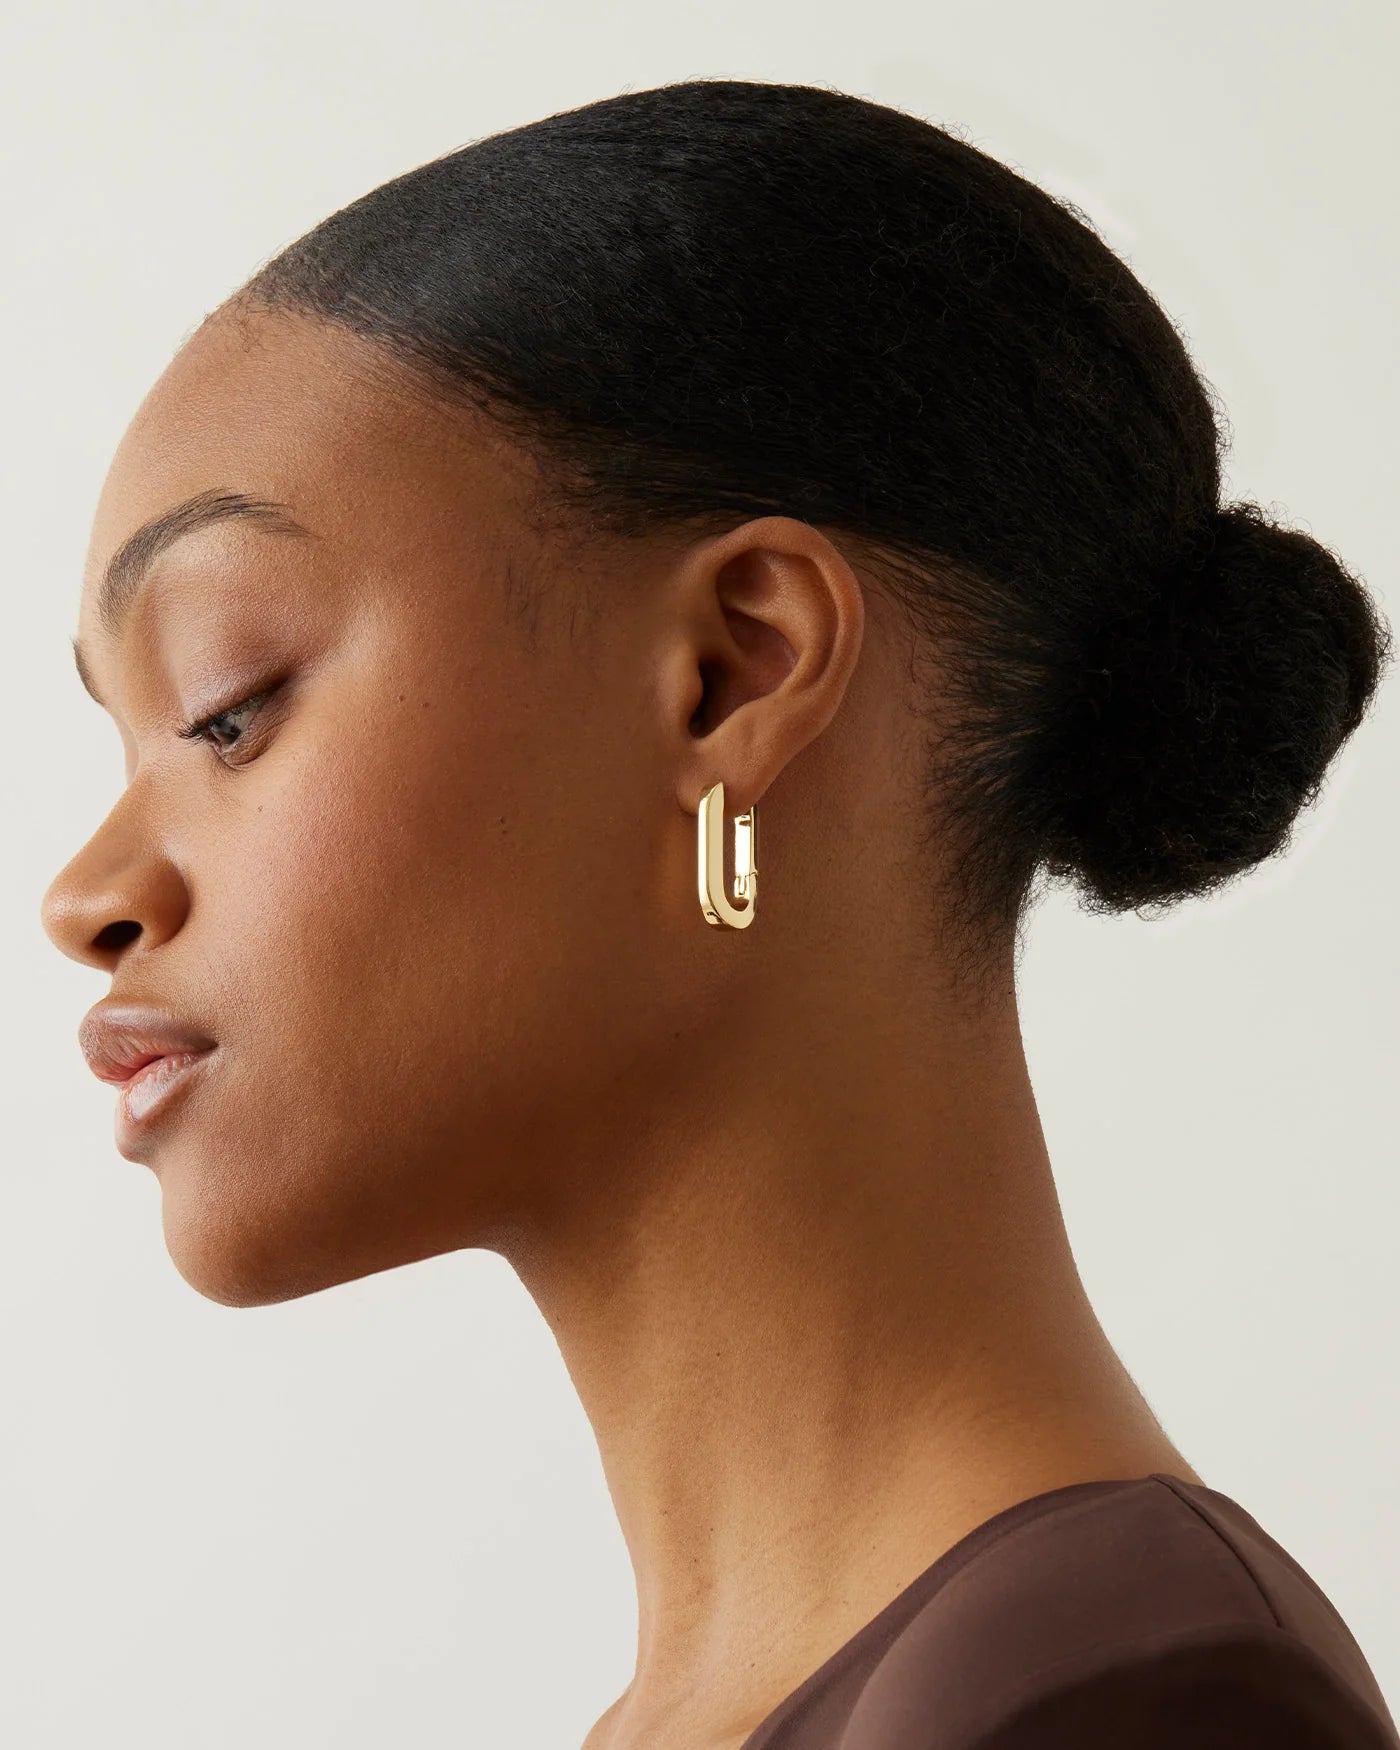 Jenny Bird U-Link Earrings - Gold